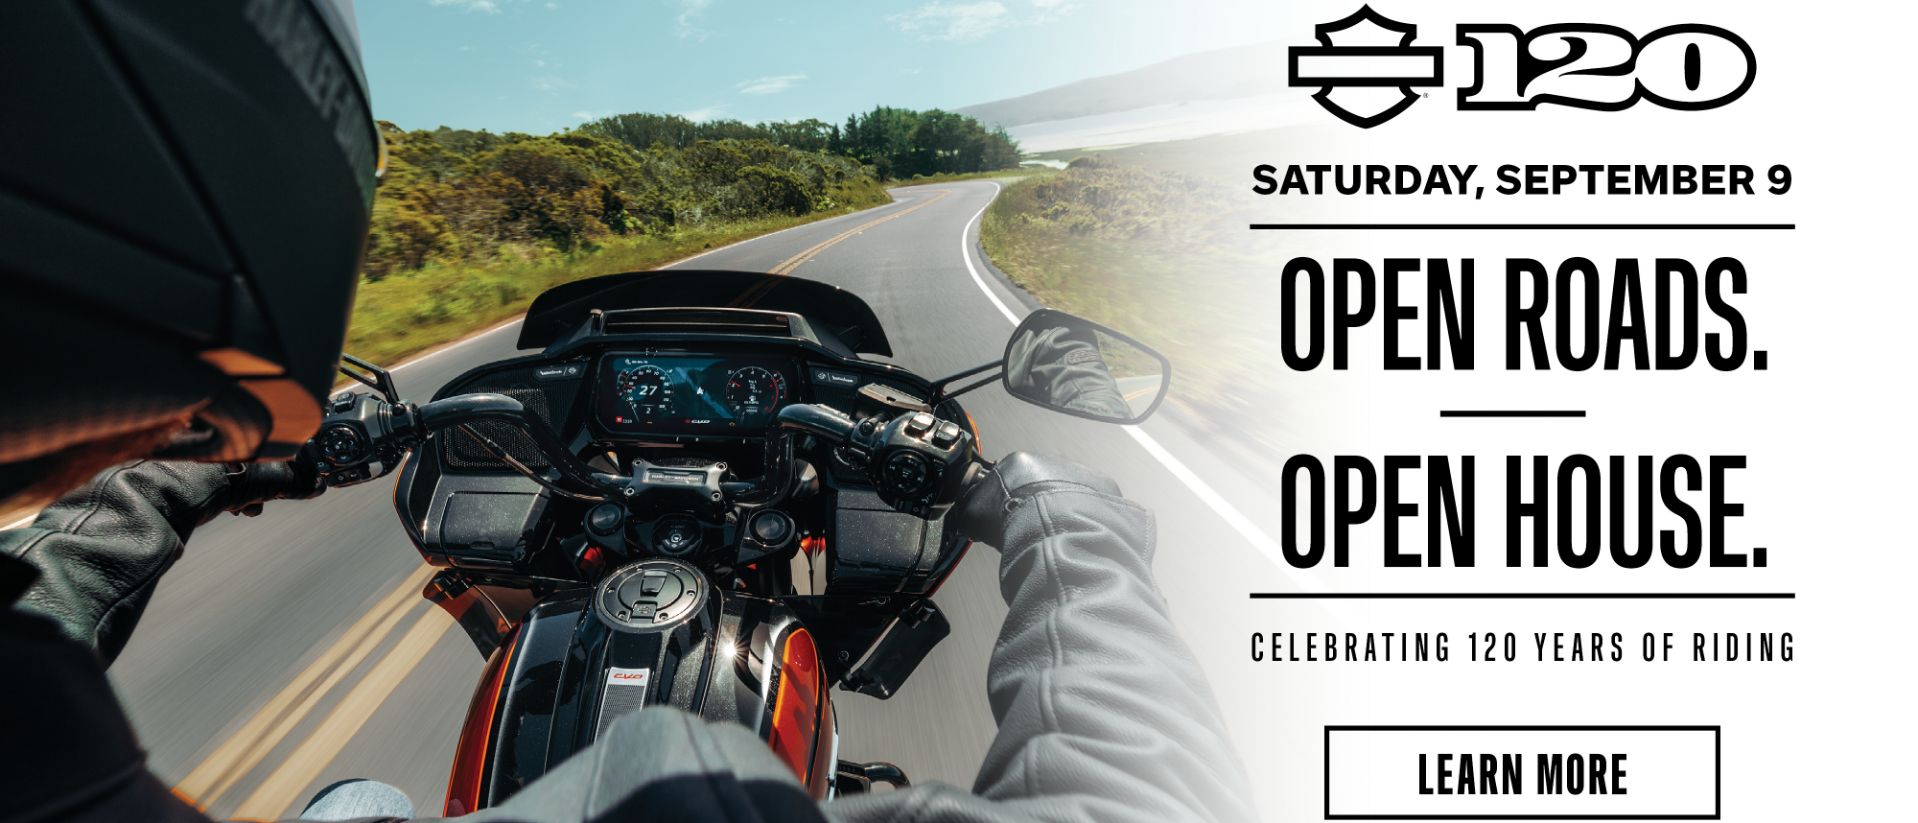 Harley Davidson Open Roads, Open House